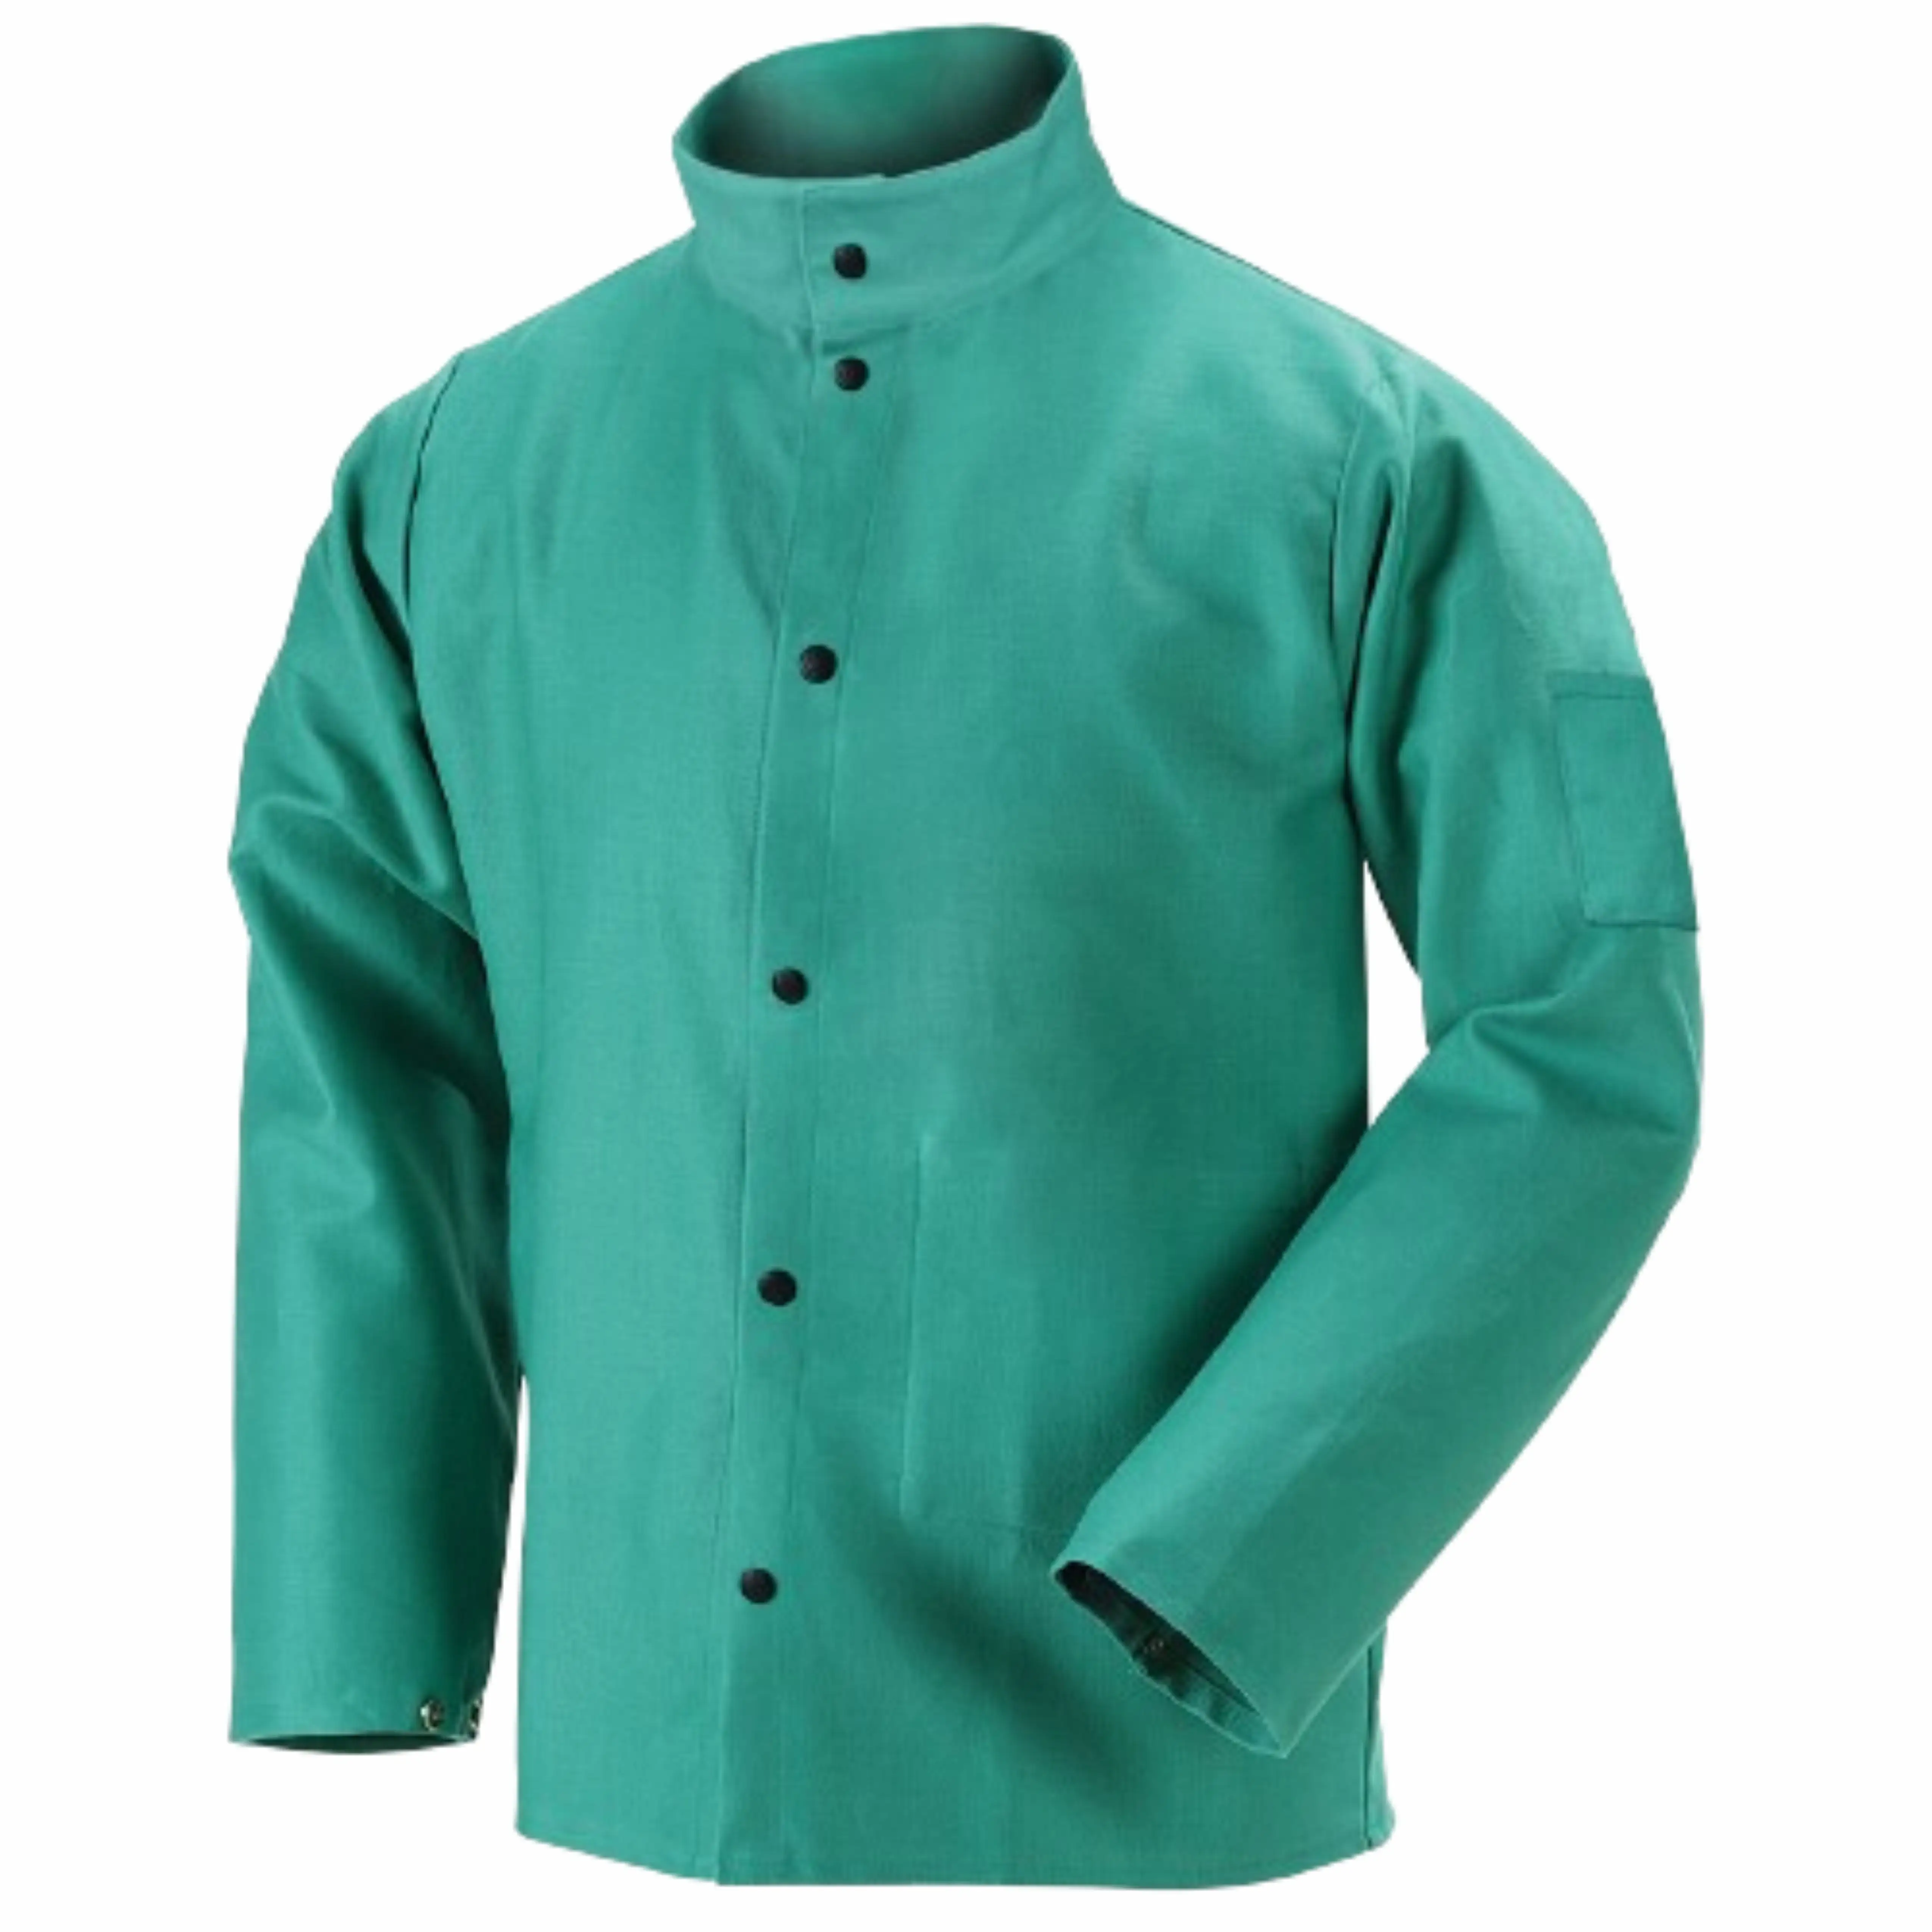 सर्वोत्तम प्रदर्शन एफआर उपचारित ड्रिल्ड सूती कपड़े वेल्डिंग जैकेट औद्योगिक सुरक्षा स्पार्क आग प्रतिरोधी निर्माण जैकेट